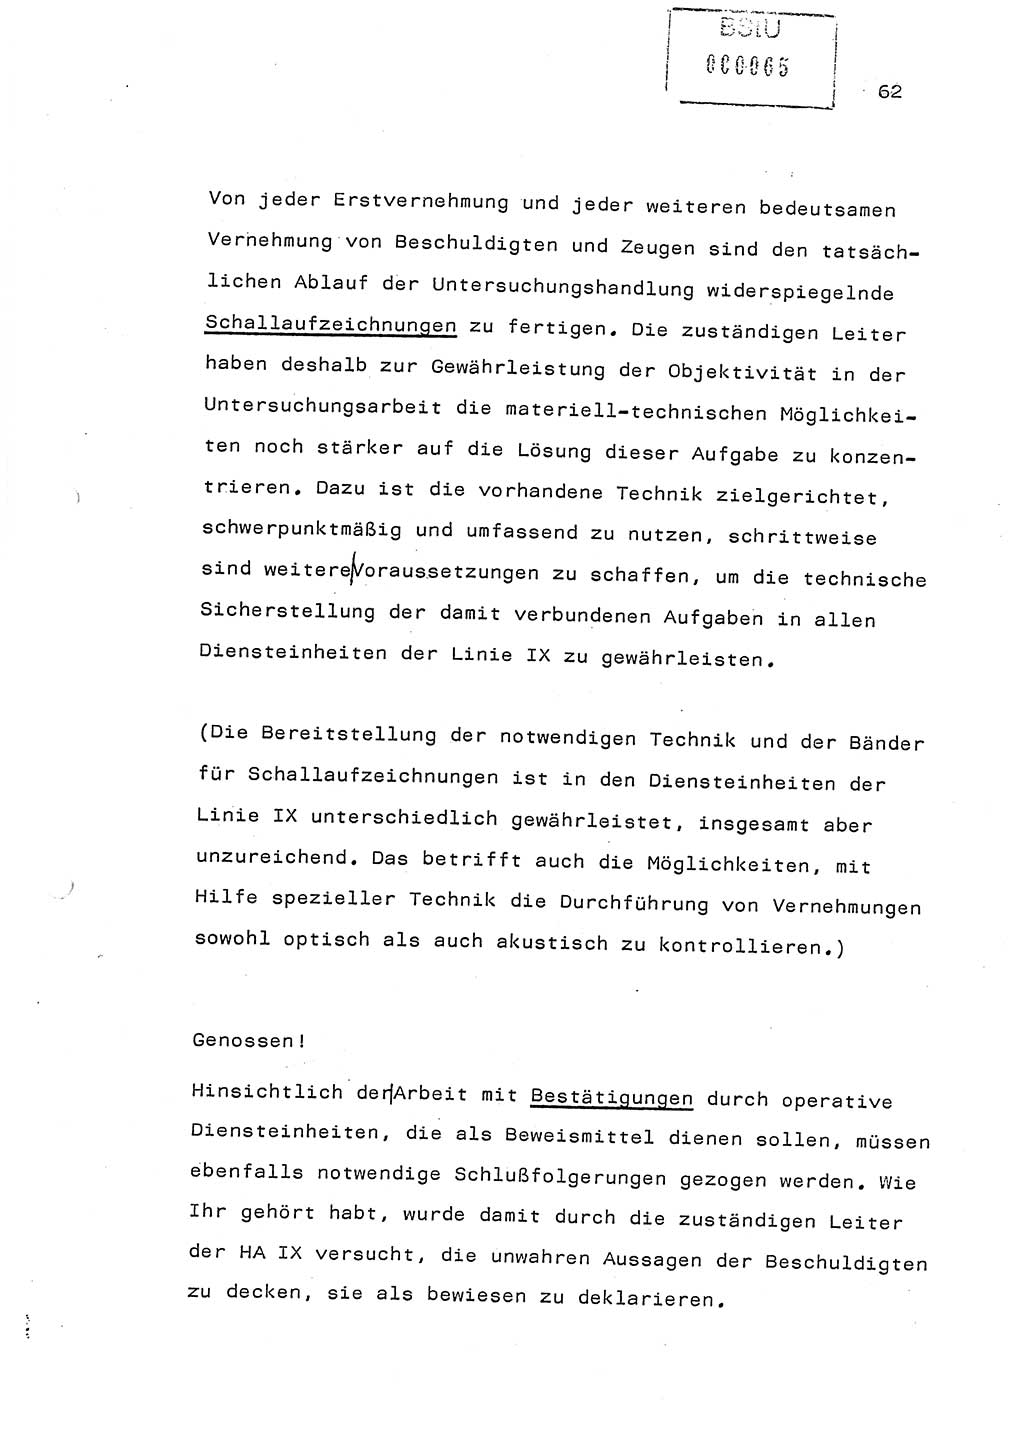 Referat (Generaloberst Erich Mielke) auf der Zentralen Dienstkonferenz am 24.5.1979 [Ministerium für Staatssicherheit (MfS), Deutsche Demokratische Republik (DDR), Der Minister], Berlin 1979, Seite 62 (Ref. DK DDR MfS Min. /79 1979, S. 62)